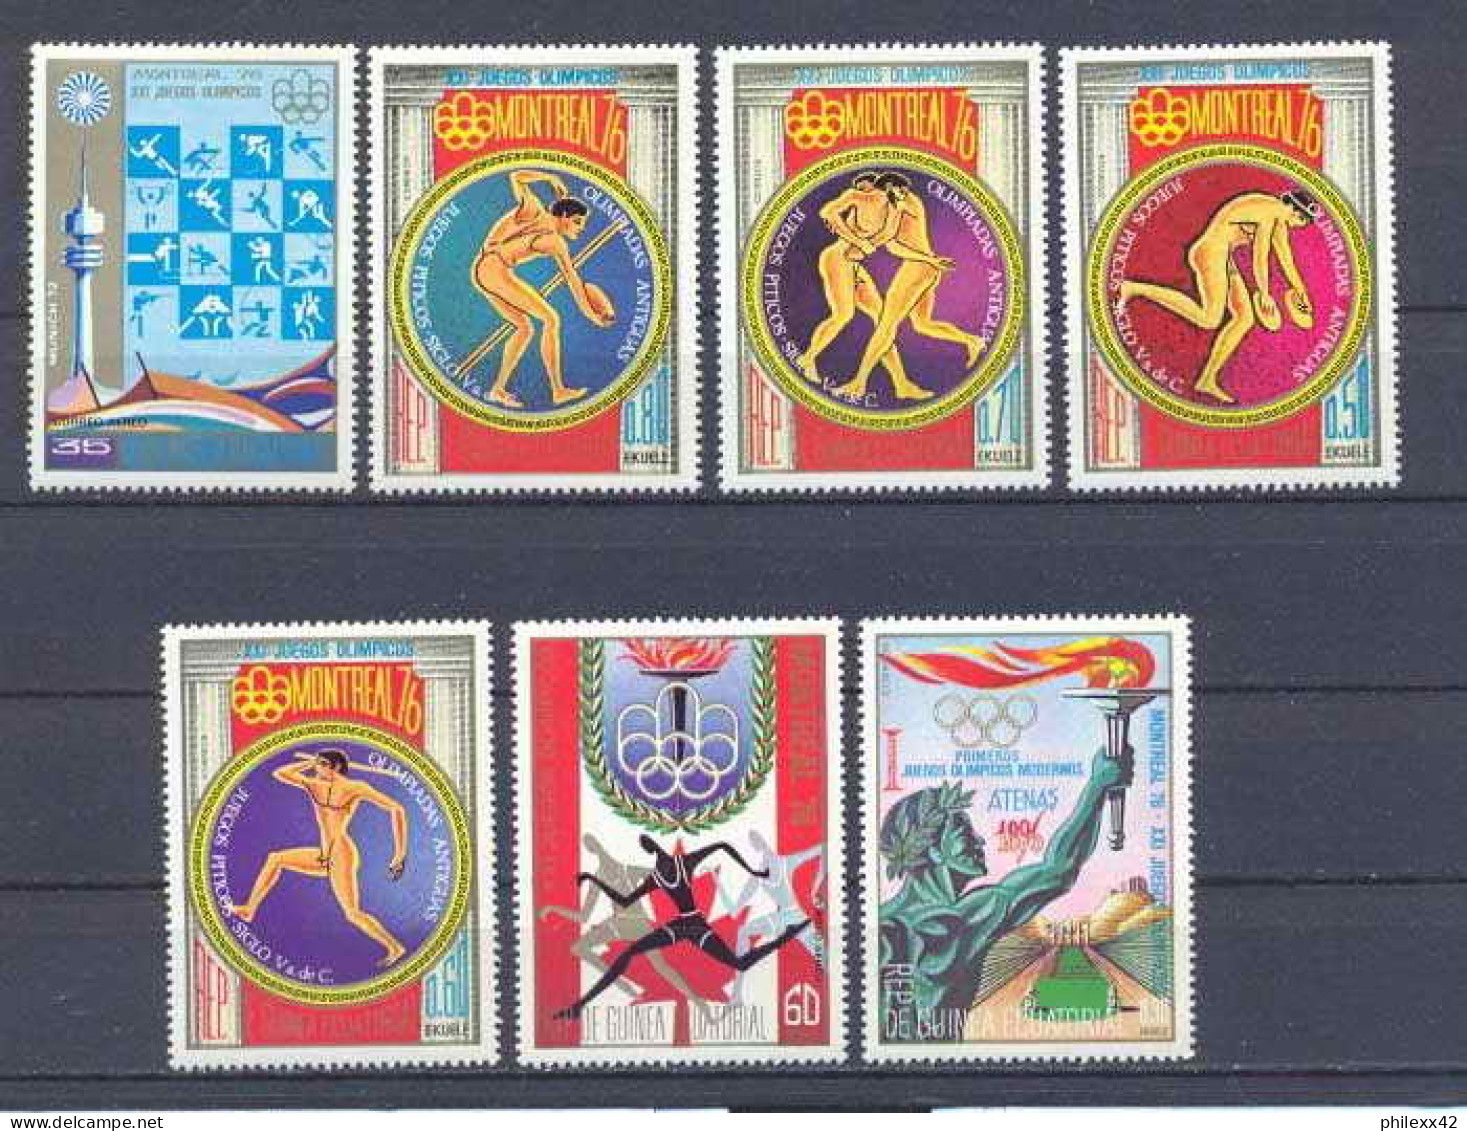 Guinée équatoriale Guinea 125 N°680/86 Jeux Olympiques Olympic Games Montréal 1976 Serie Complète MNH ** - Guinea Ecuatorial